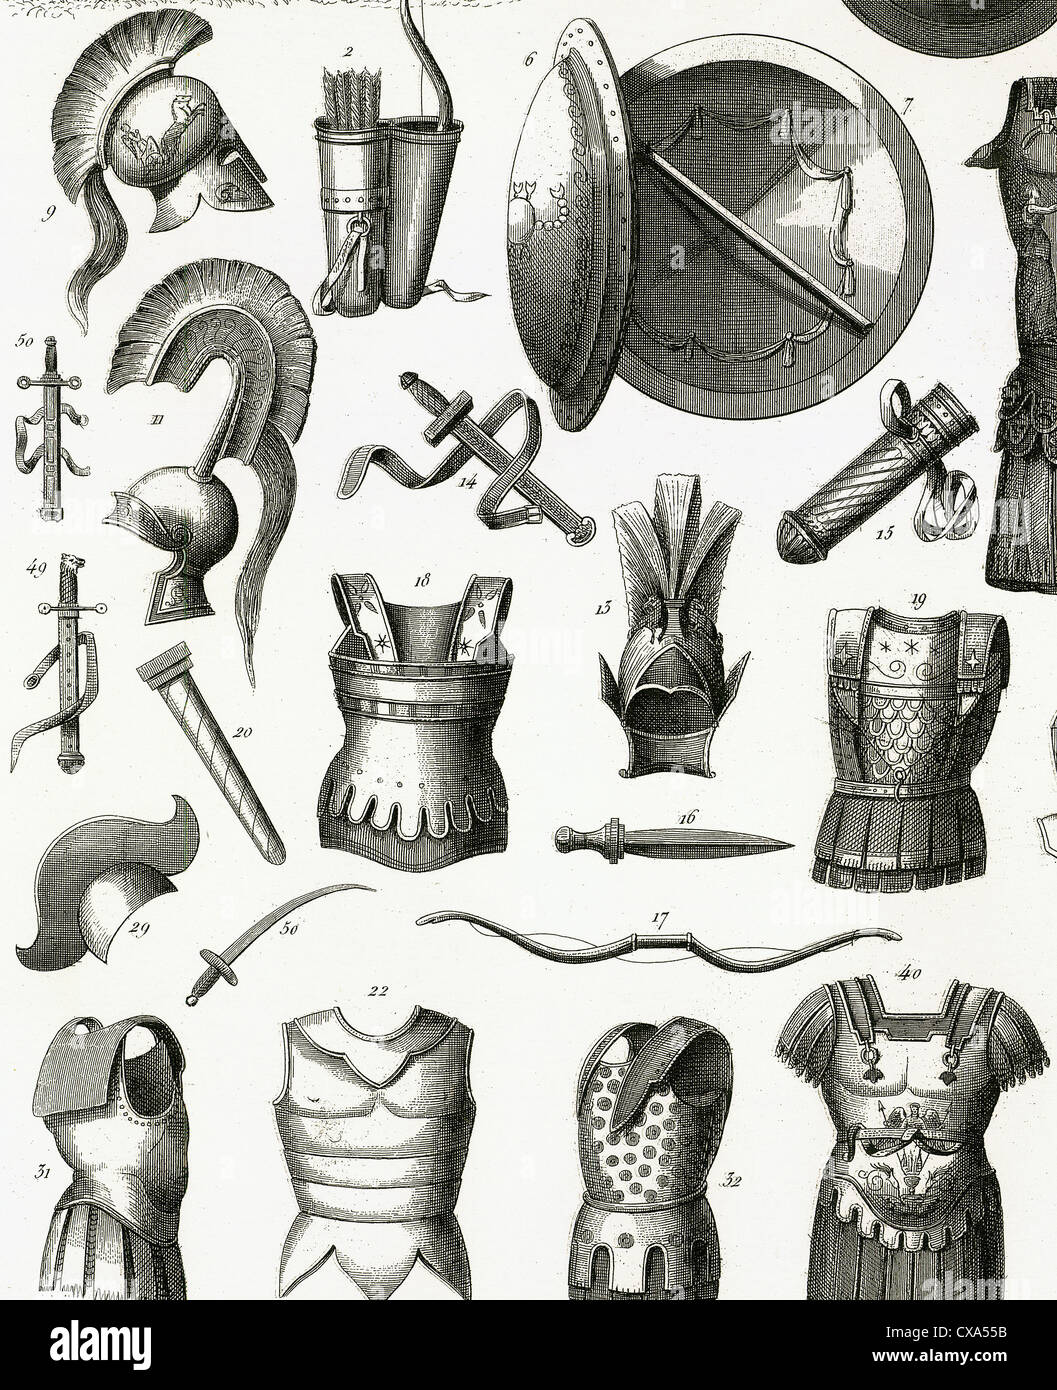 L'armée romaine. Les armures et armes. La gravure. 19e siècle. Banque D'Images